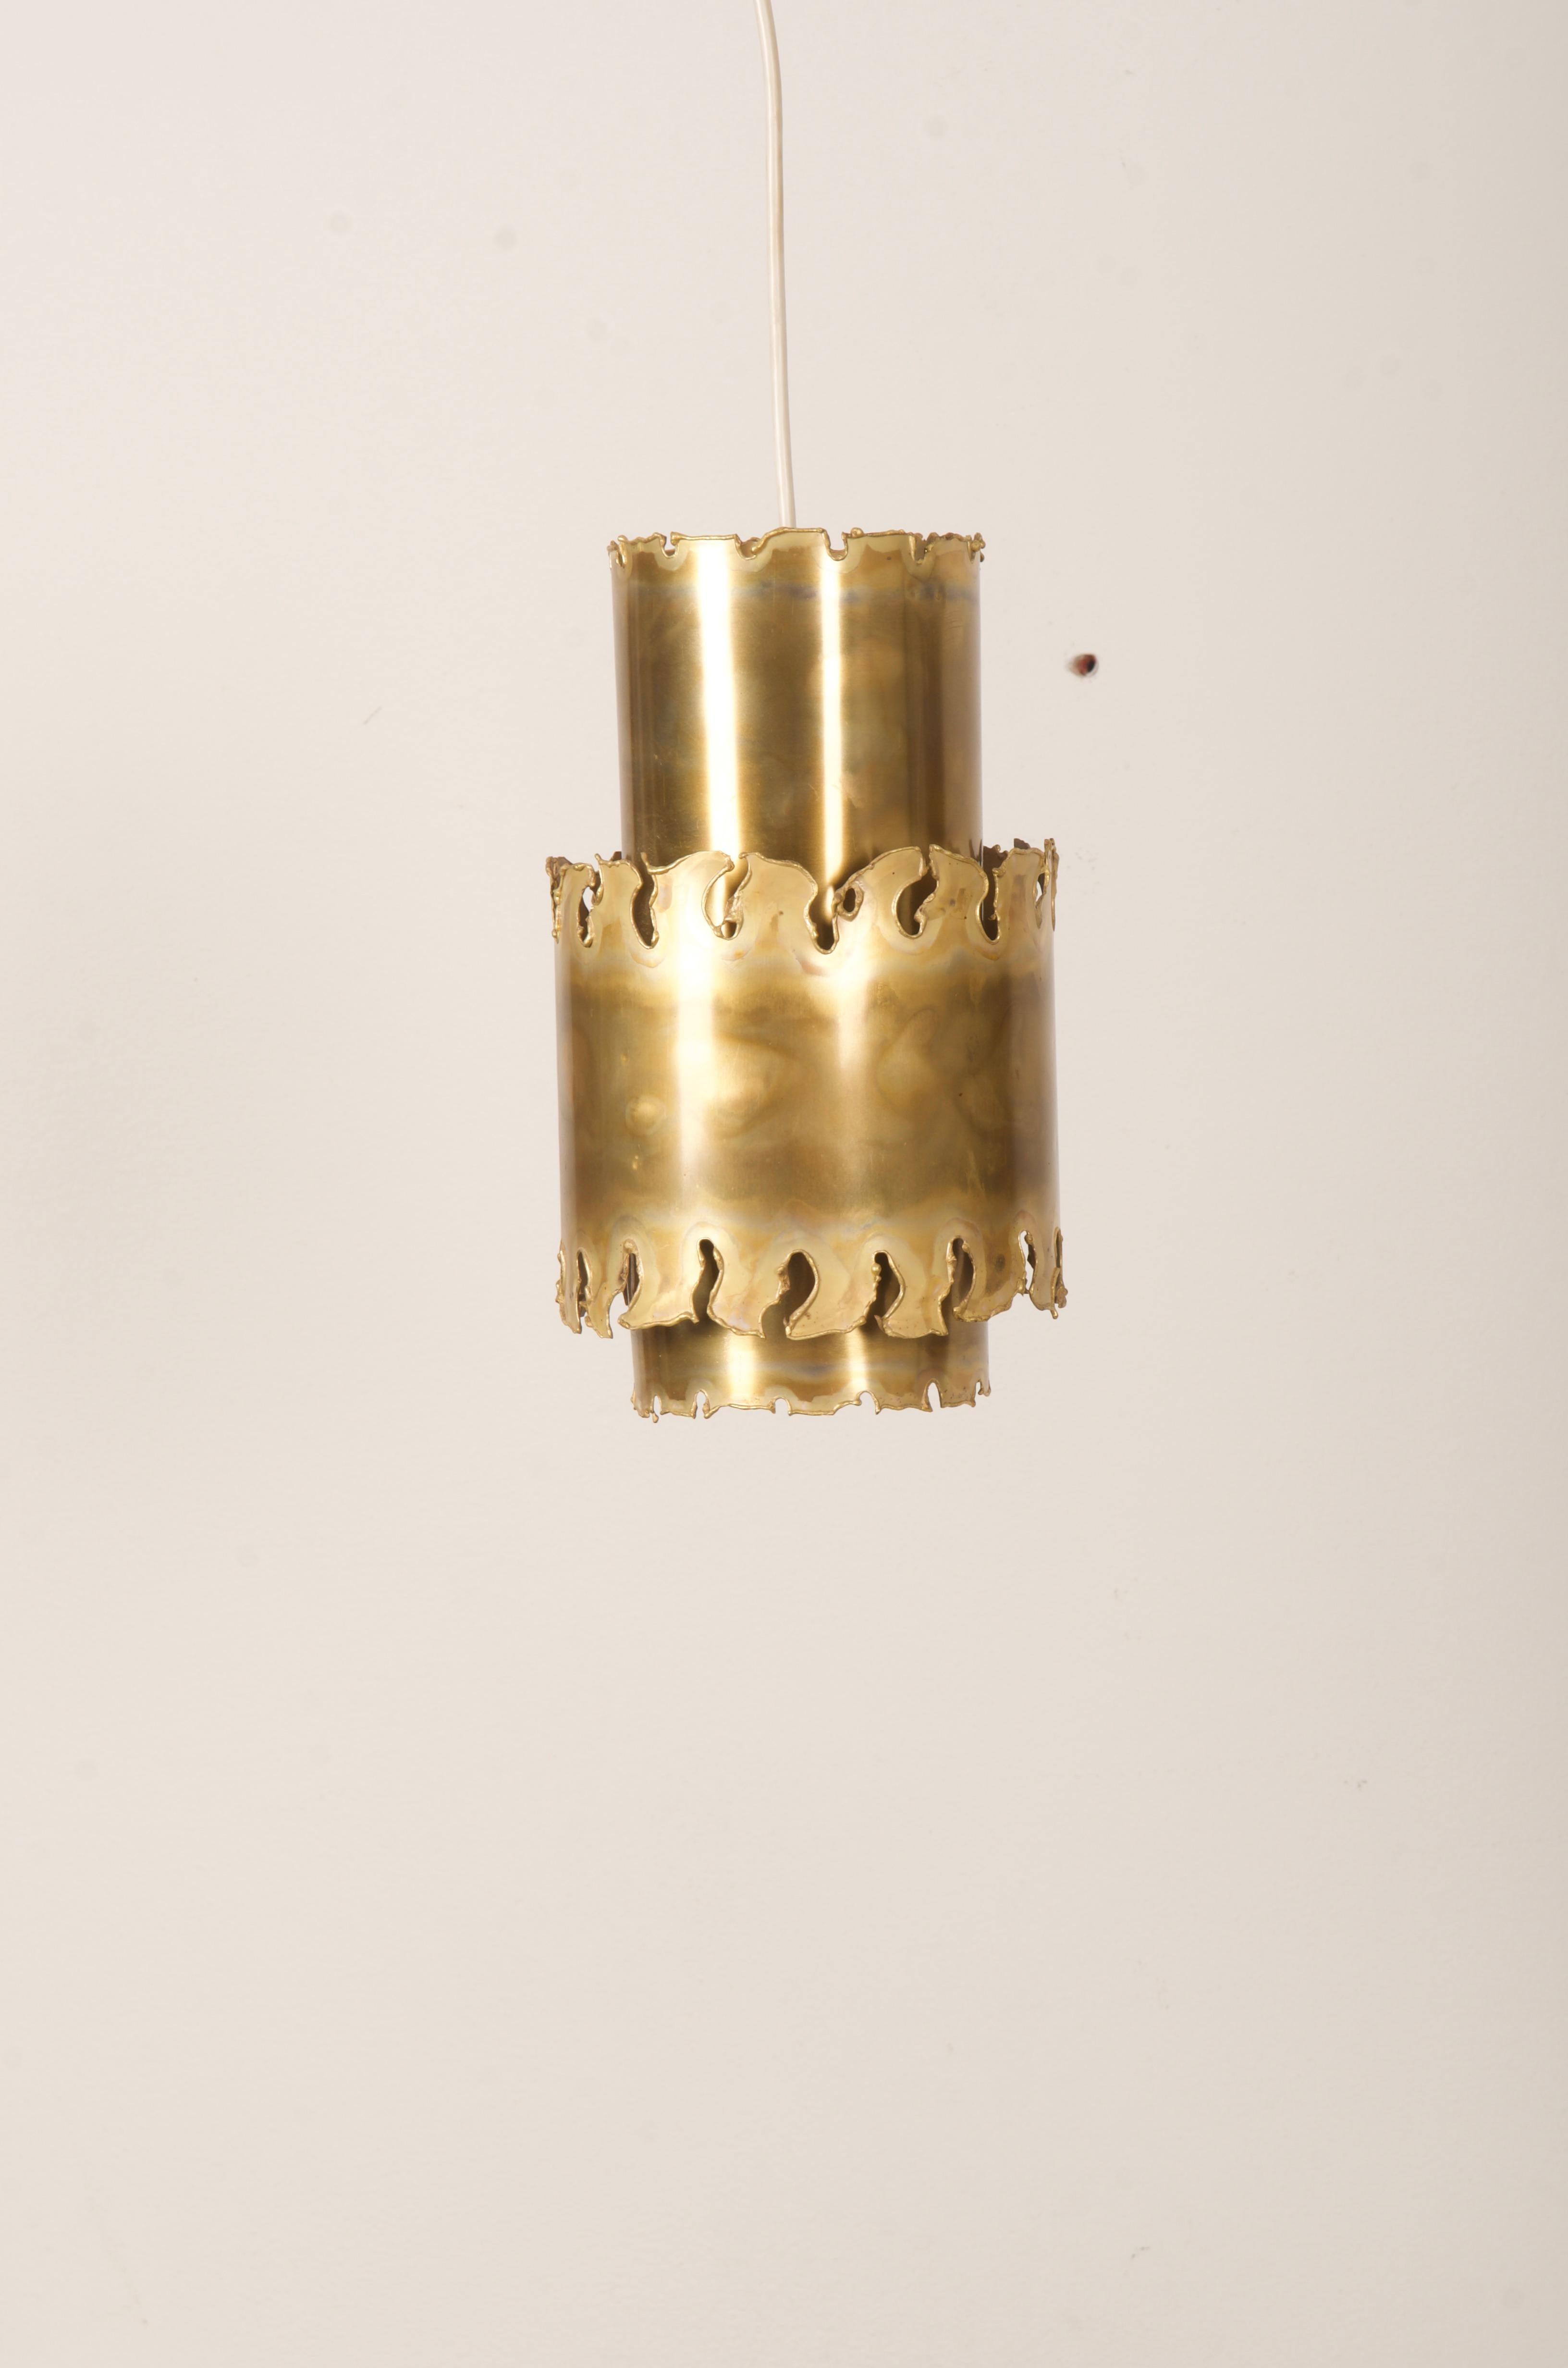 Lampe aus Messing mit einer E27-Fassung. Entworfen von Svend Aage Holm Sørensen in den 1960er Jahren in Dänemark. 
2 Stück verfügbar, Preis pro Lampe.